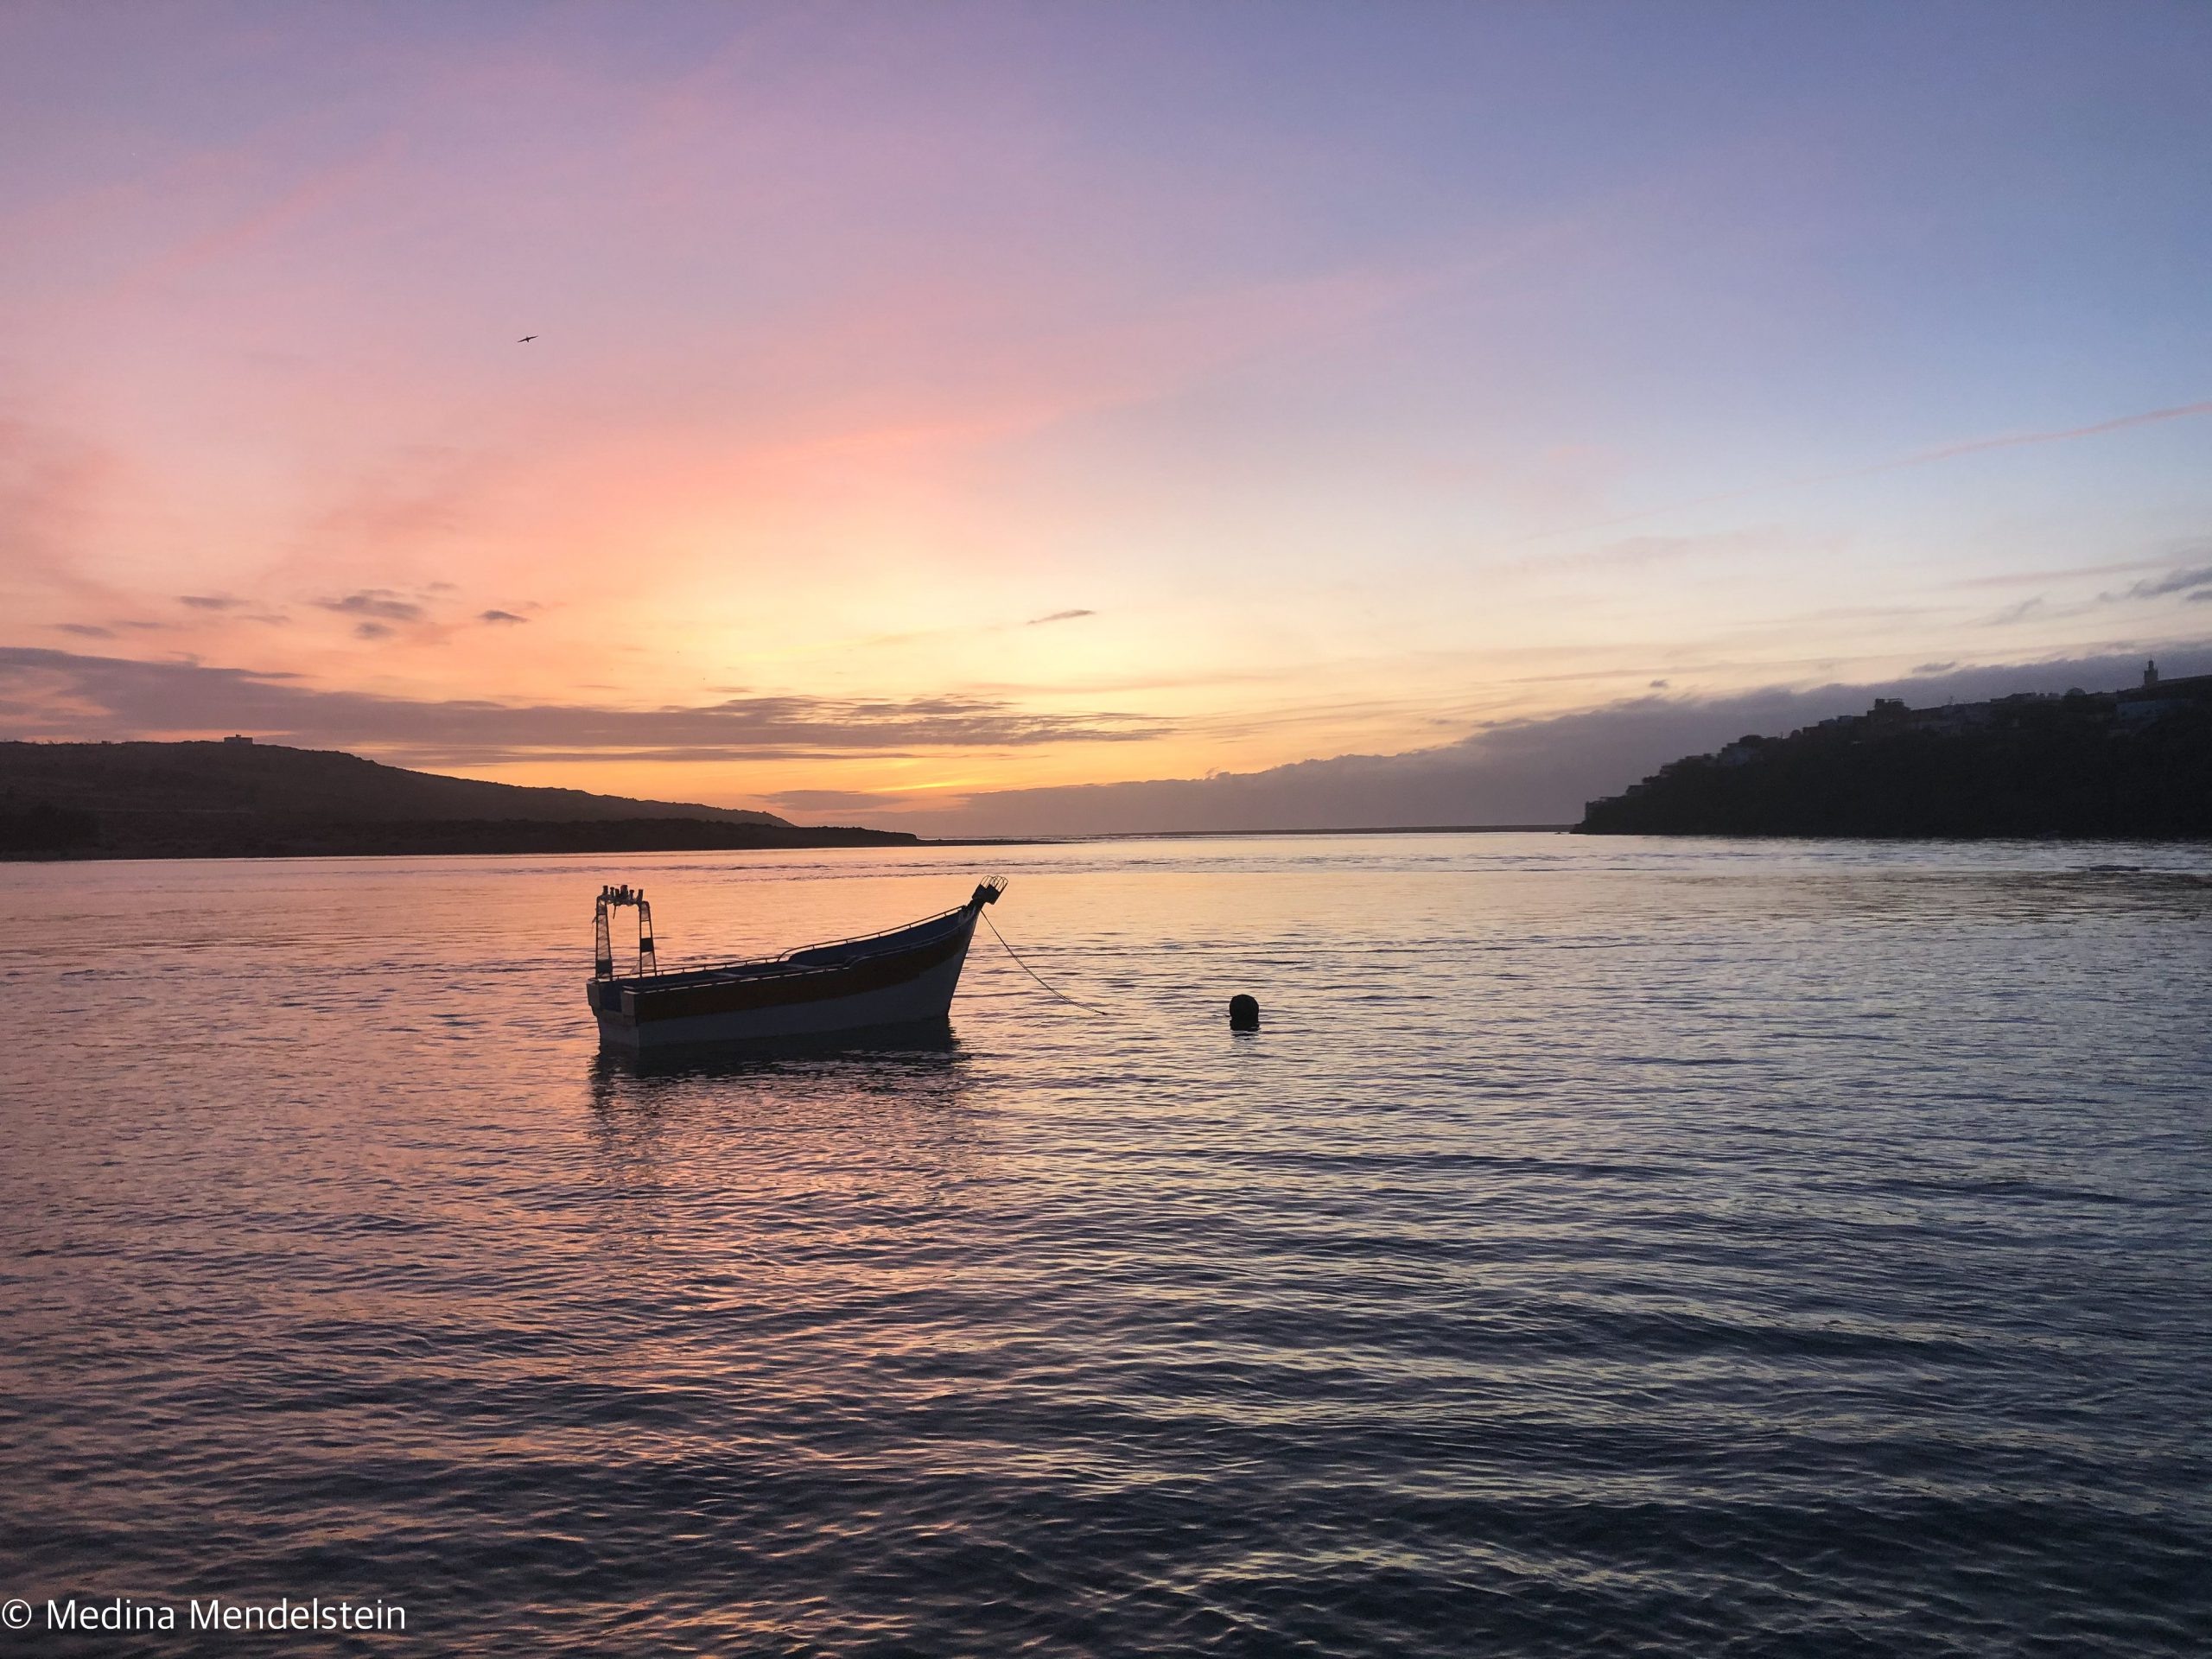 Fotografie aus: Moulay Bousselham in Marokko, Afrika: Sonnenuntergang am Wasser, im Vordergrund ist die Silhouette eines Fischerboots zu sehen.